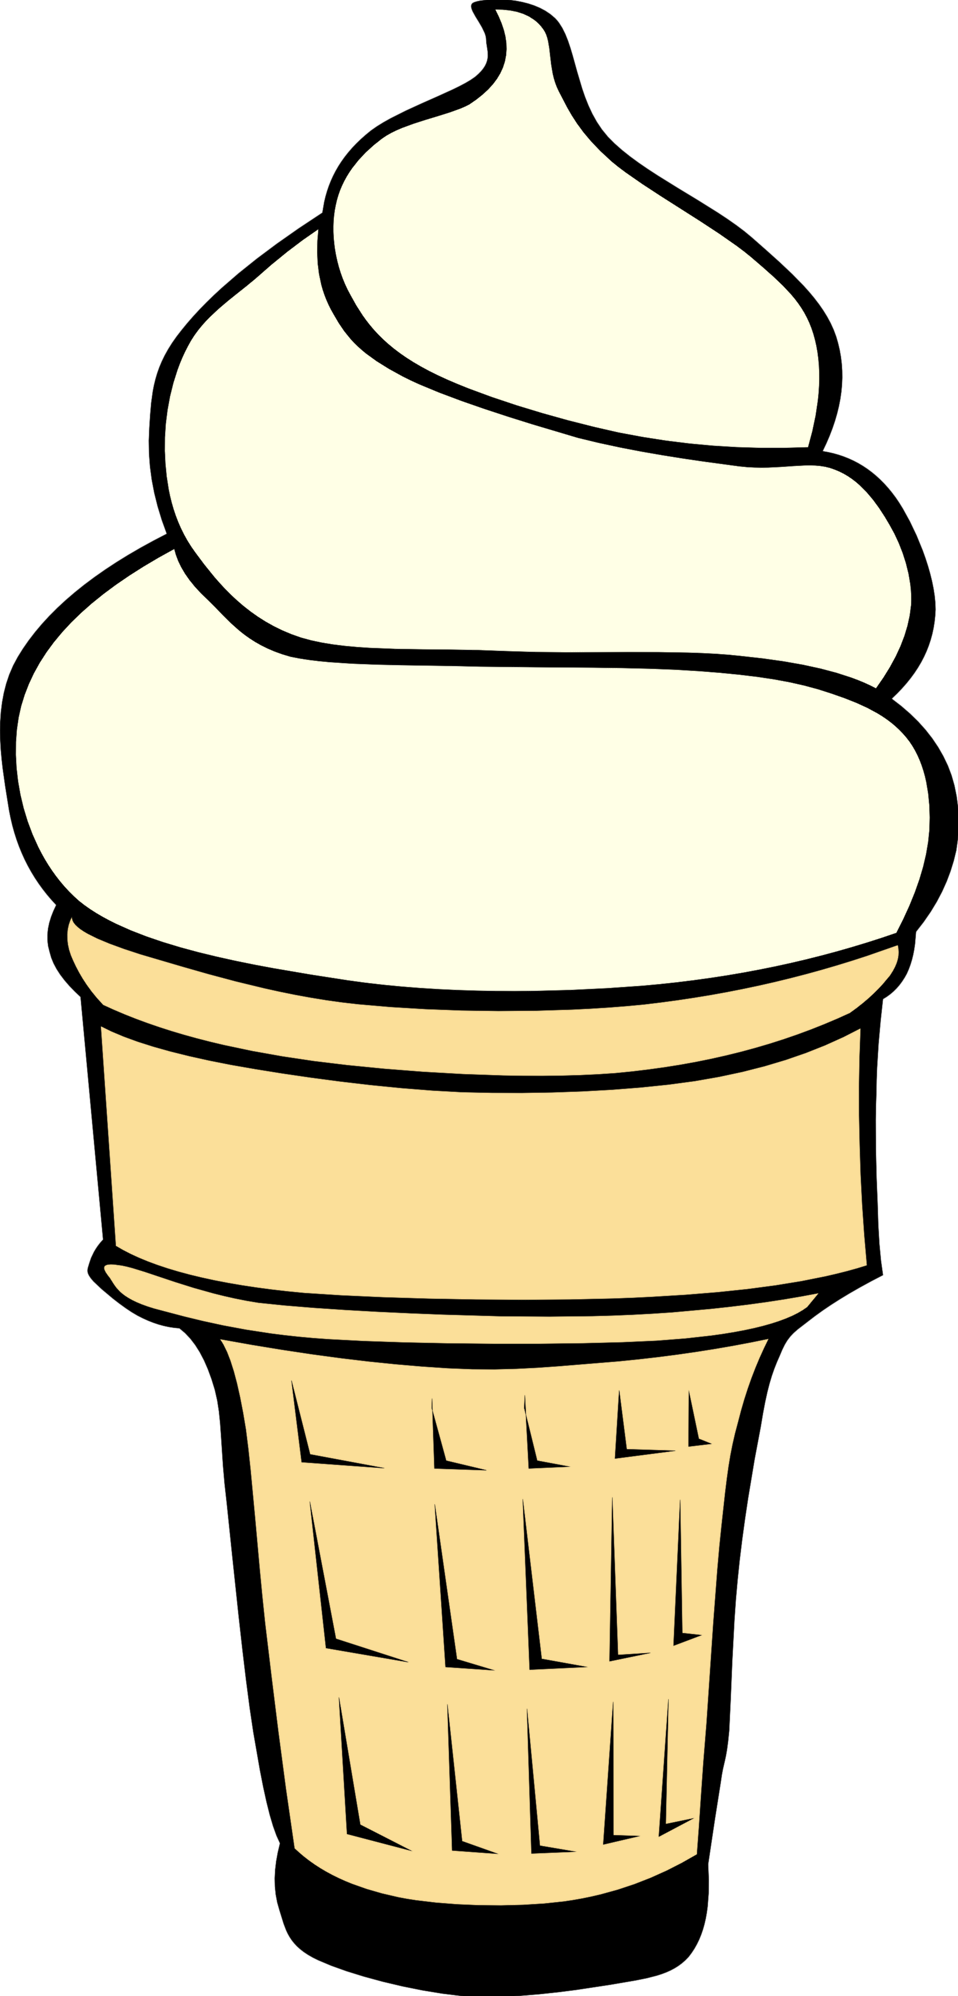 Cone clipart creame. Public domain clip art